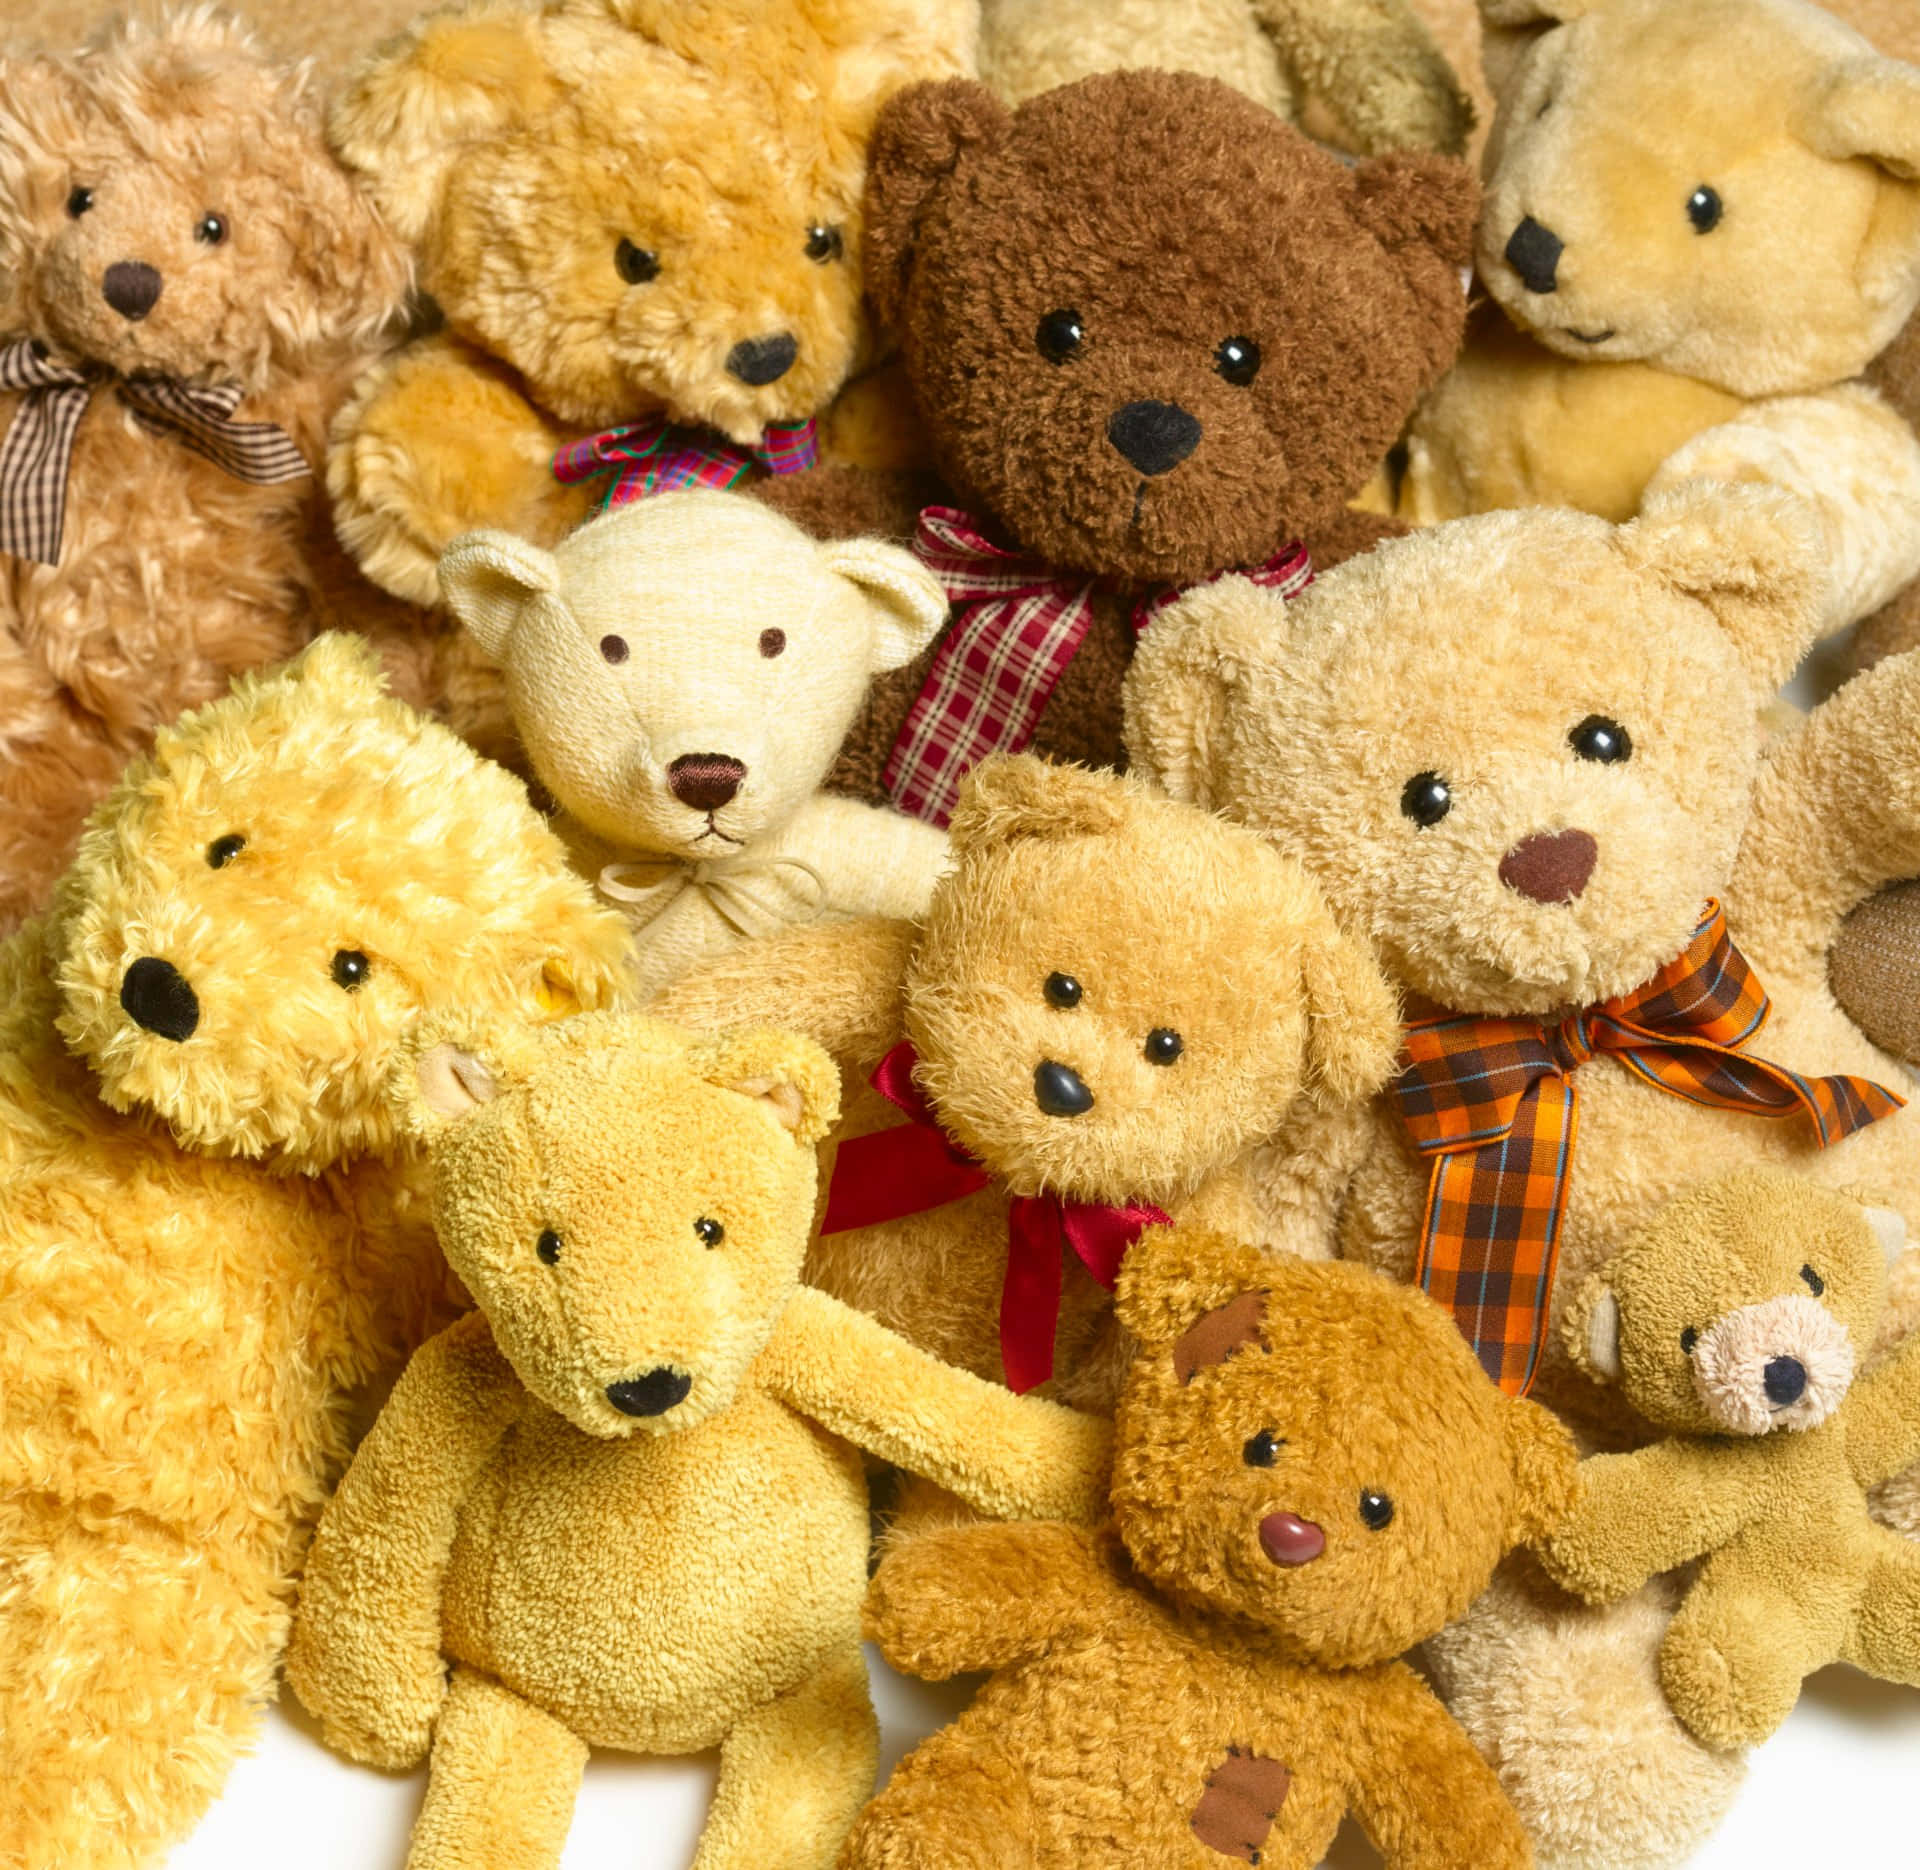 A Group Of Teddy Bears